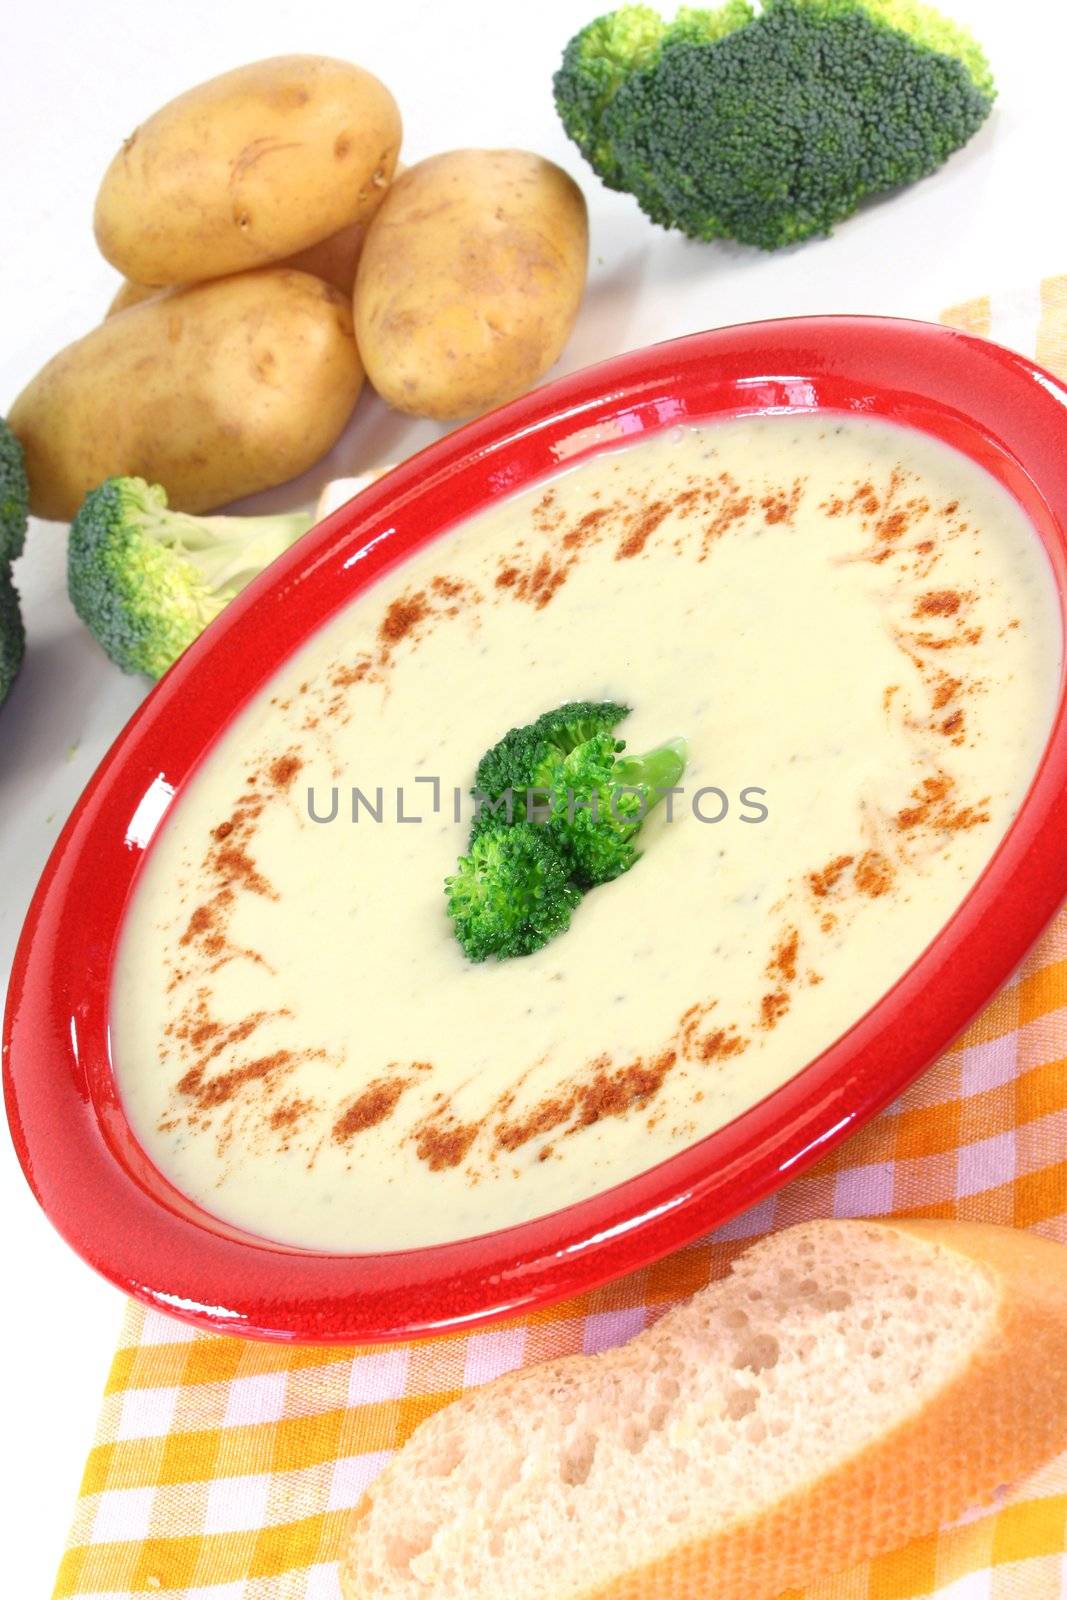 Broccoli cream soup by silencefoto